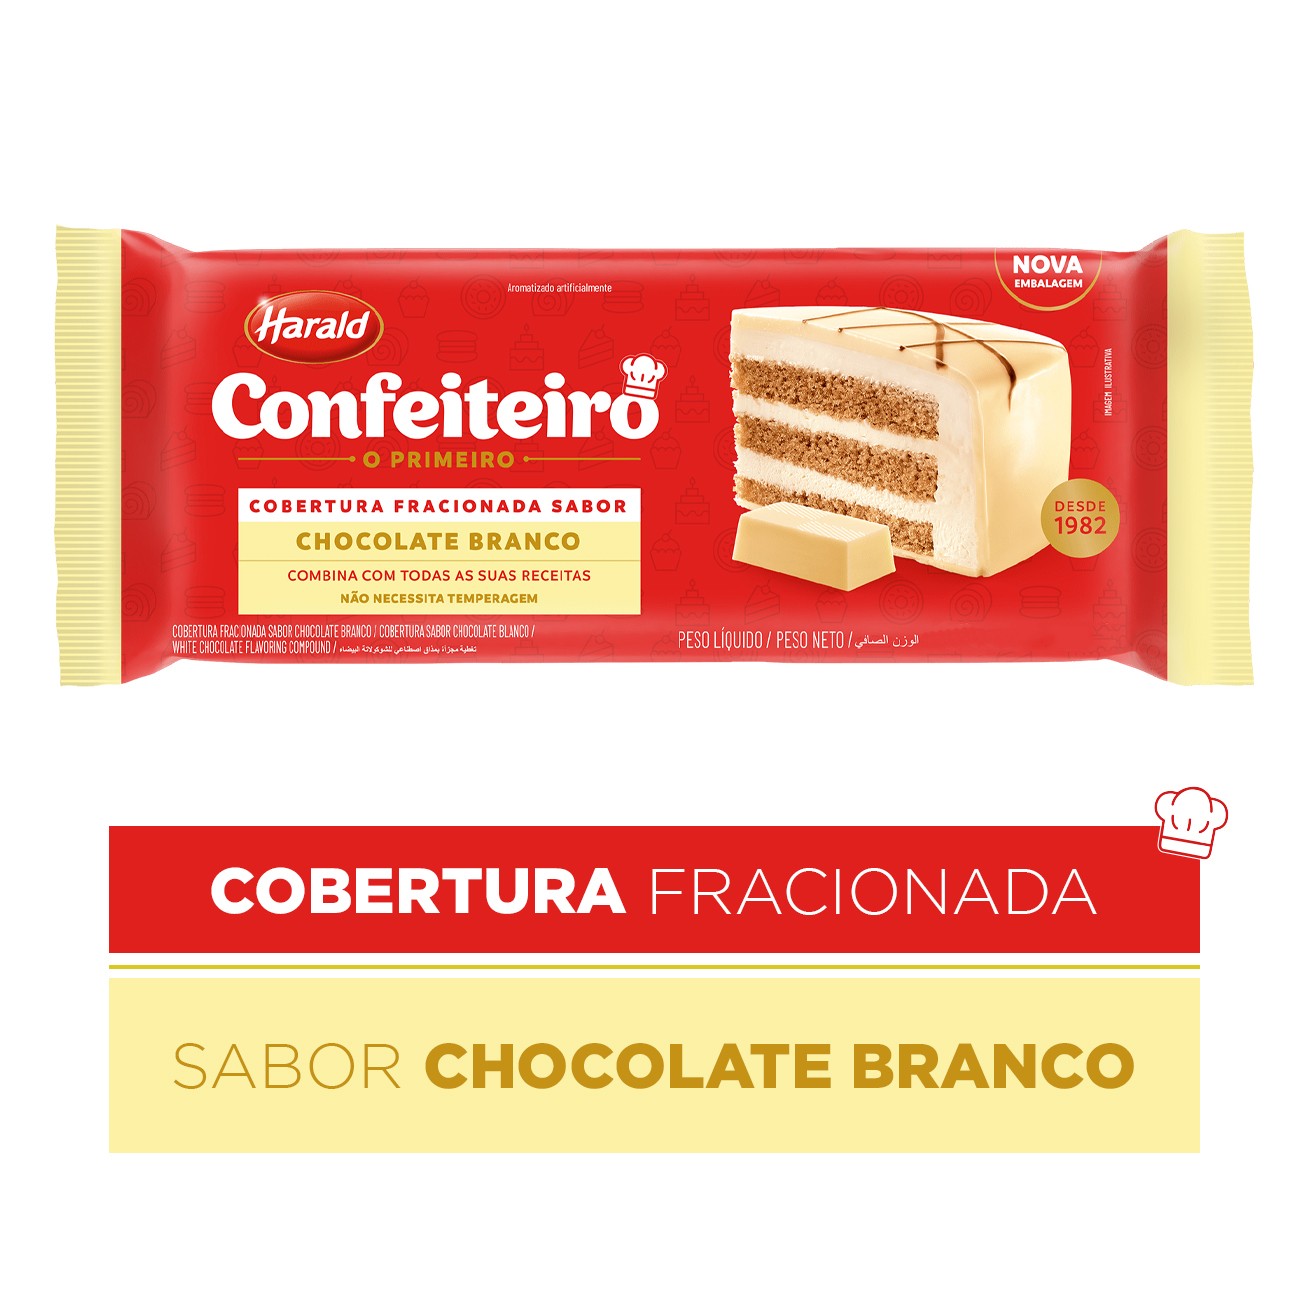 Cobertura de Chocolate em Barra Harald Confeiteiro Fracionada Branco 2,1kg